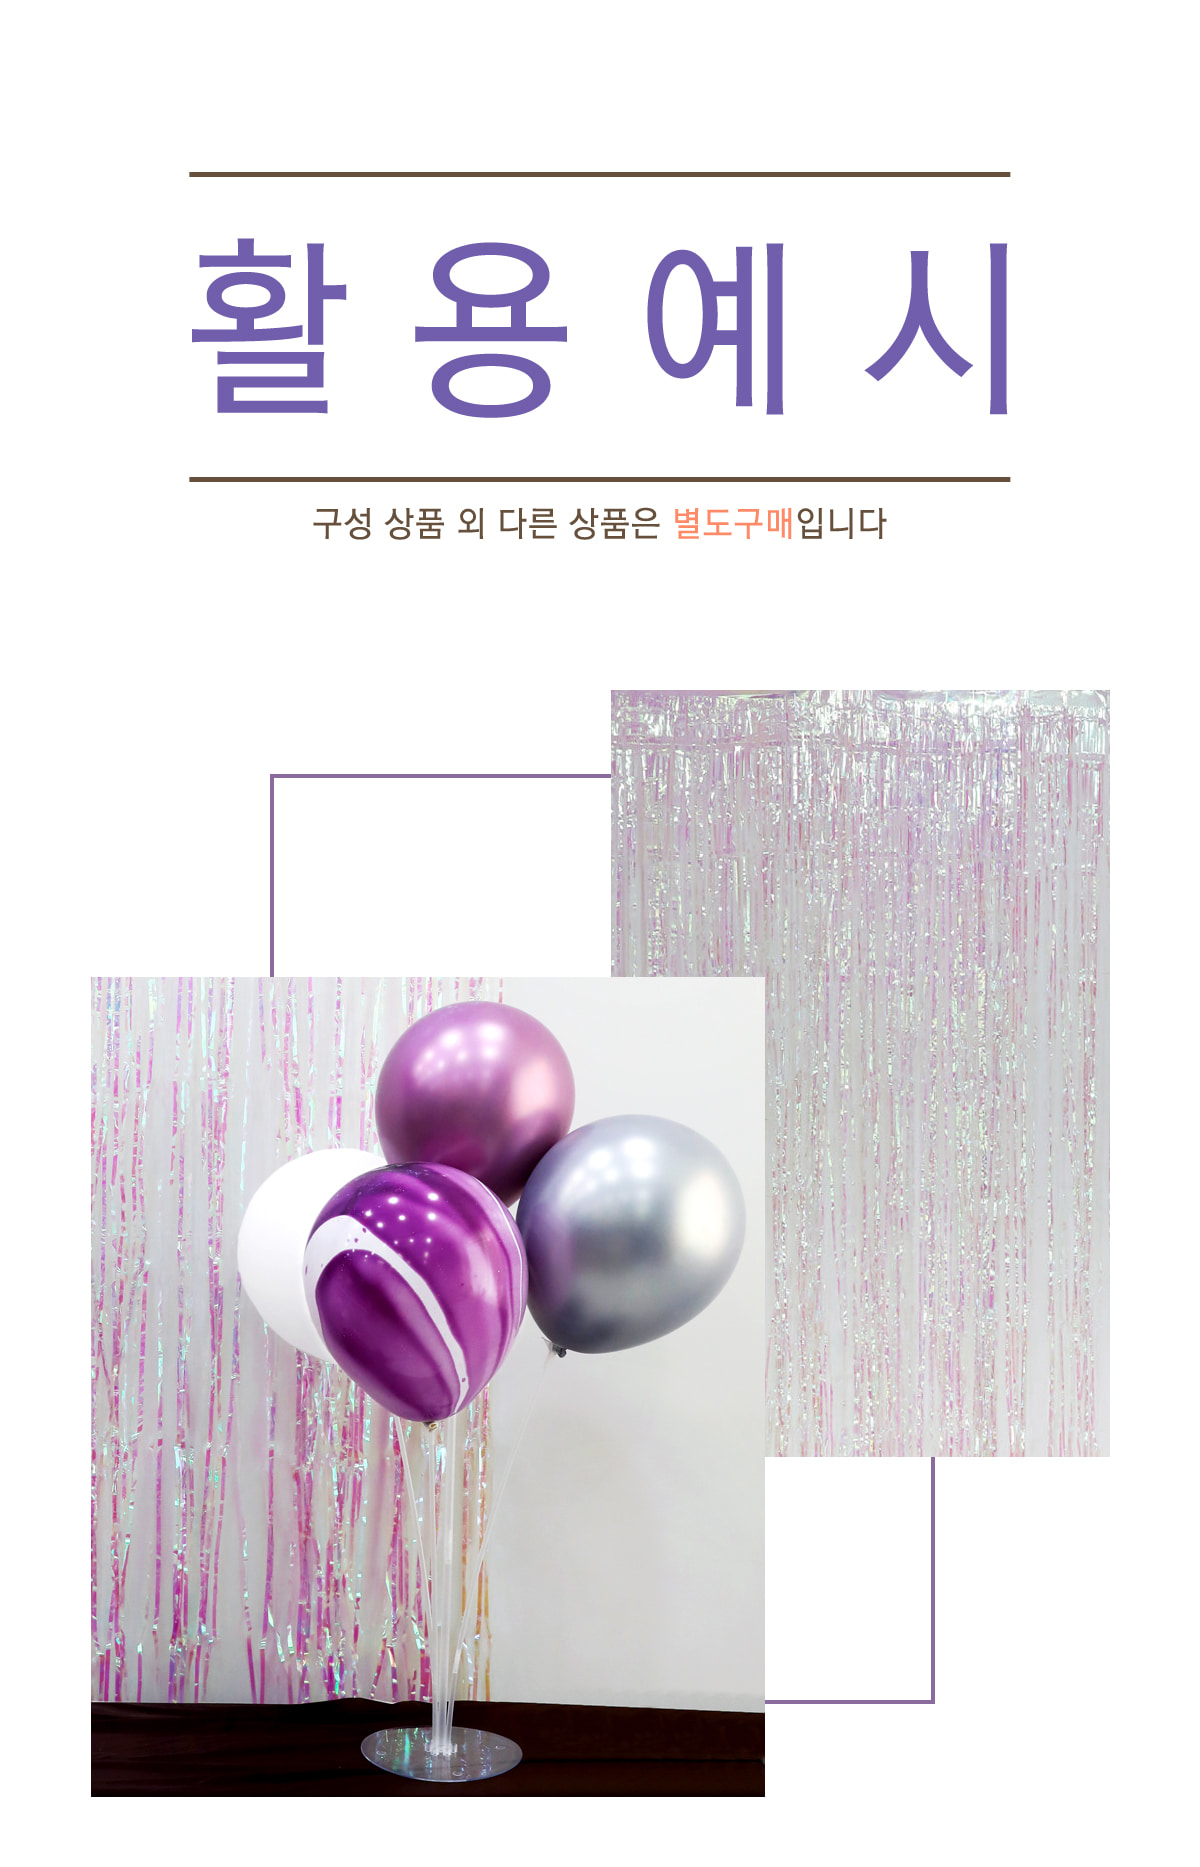 셀프백일현수막 환갑플랜카드